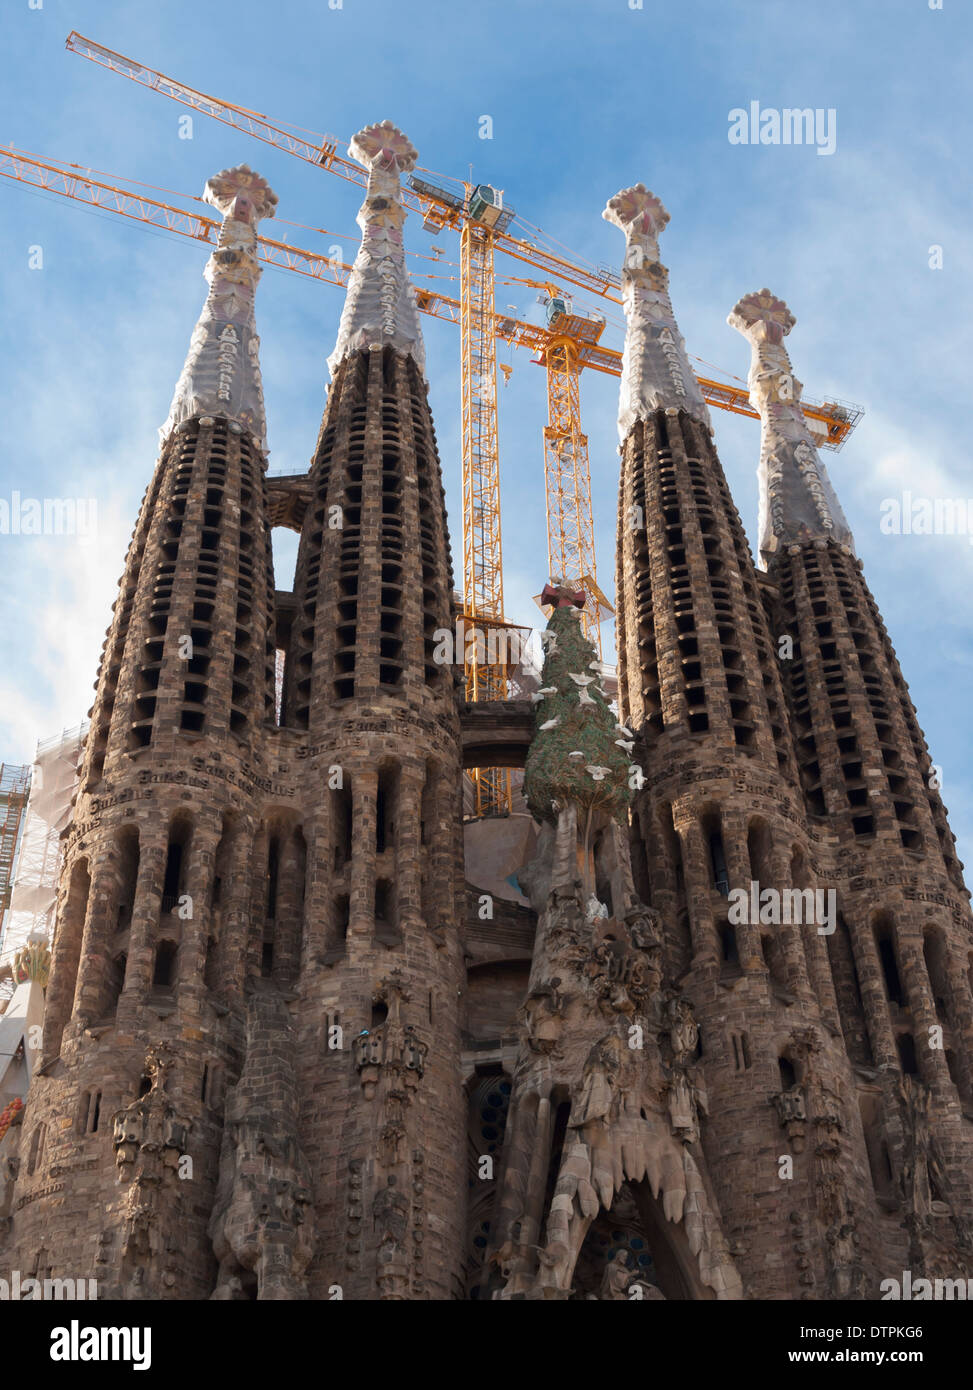 Grues de construction à Antonio Gaudi's cathédrale "Sagrada Familia" à Barcelone, Espagne. Banque D'Images